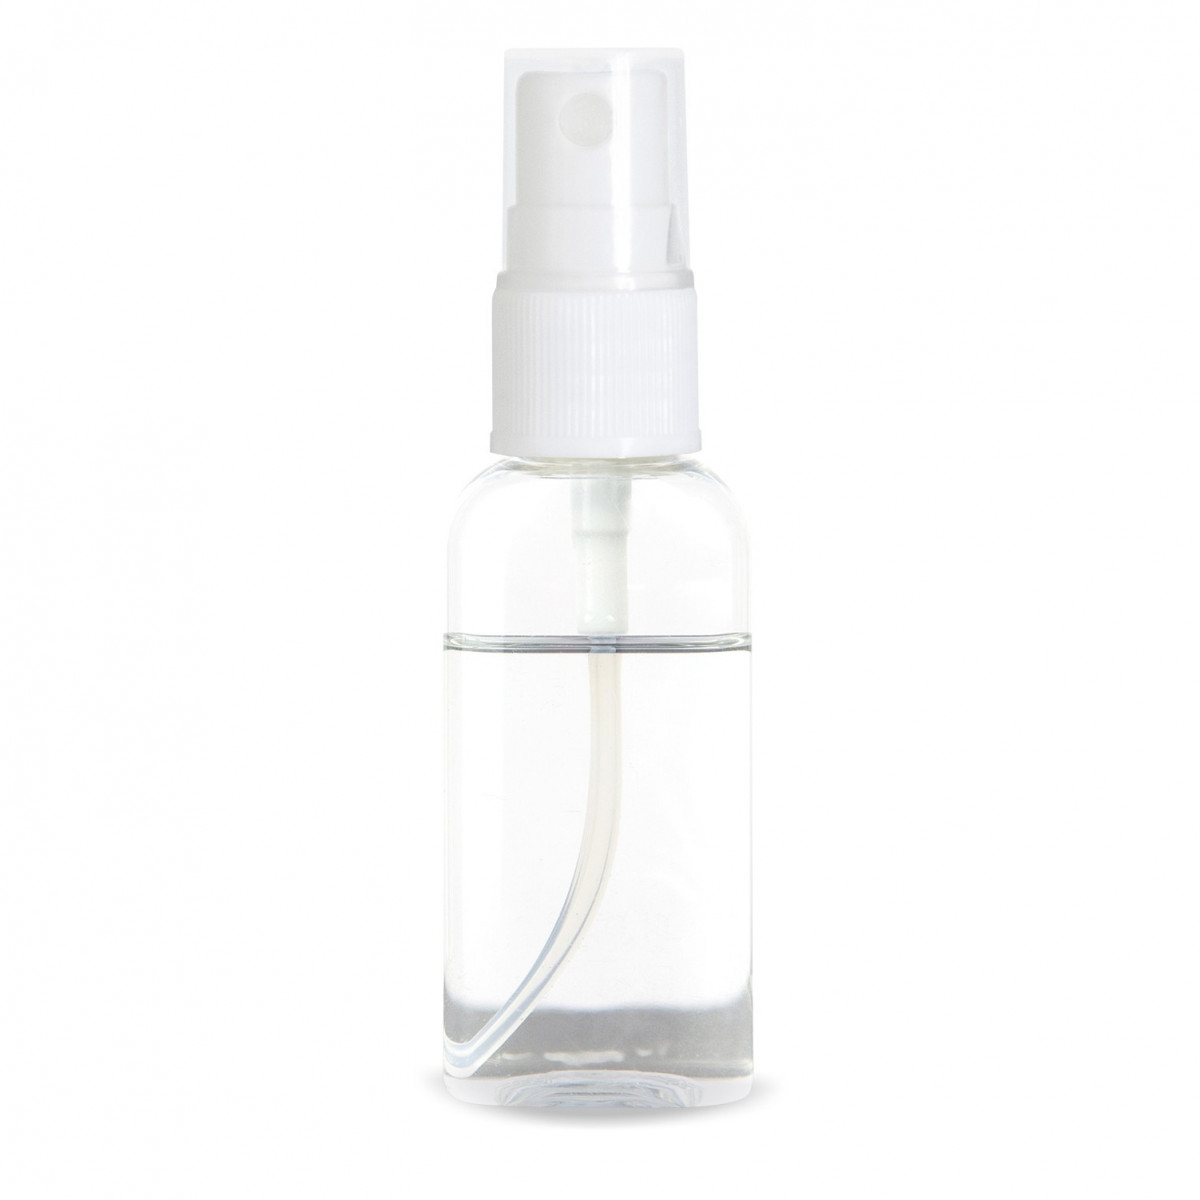 Spray transparente rellenable práctico y económico ideal coronavirus